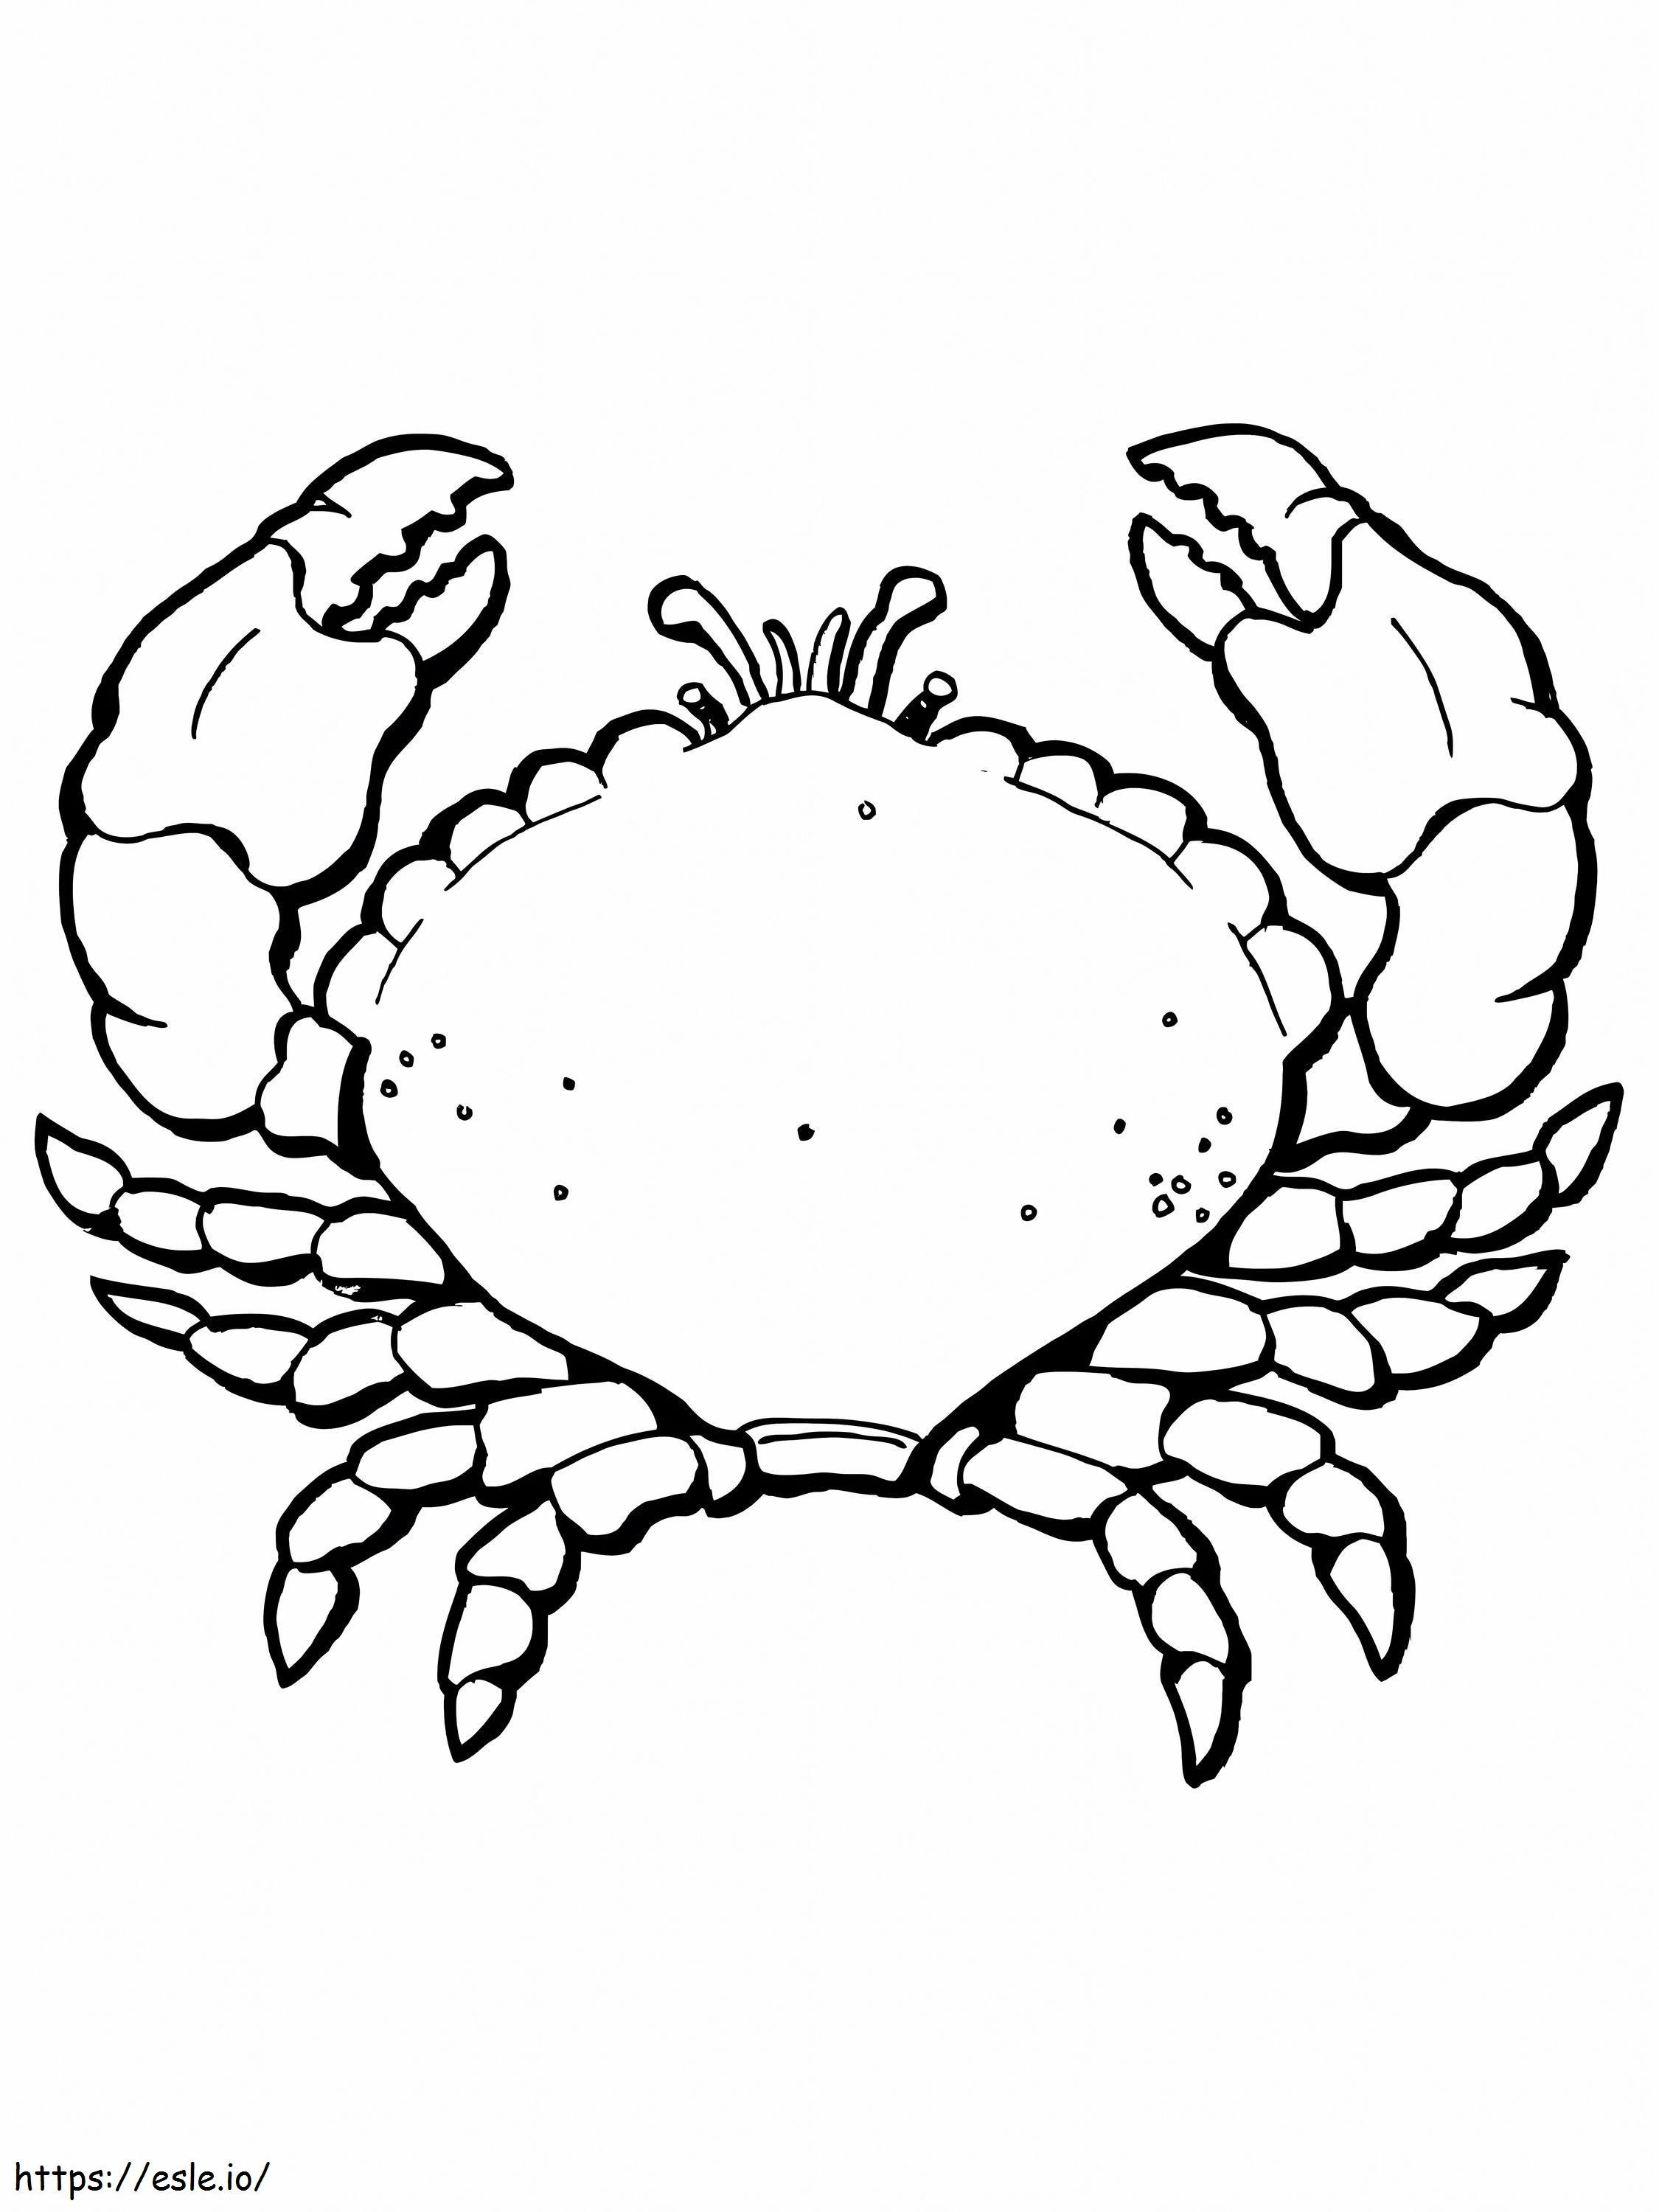 1545355472 Slimme krabben Krab met grote klauwen Pagina gratis afdrukbaar kleurplaat kleurplaat